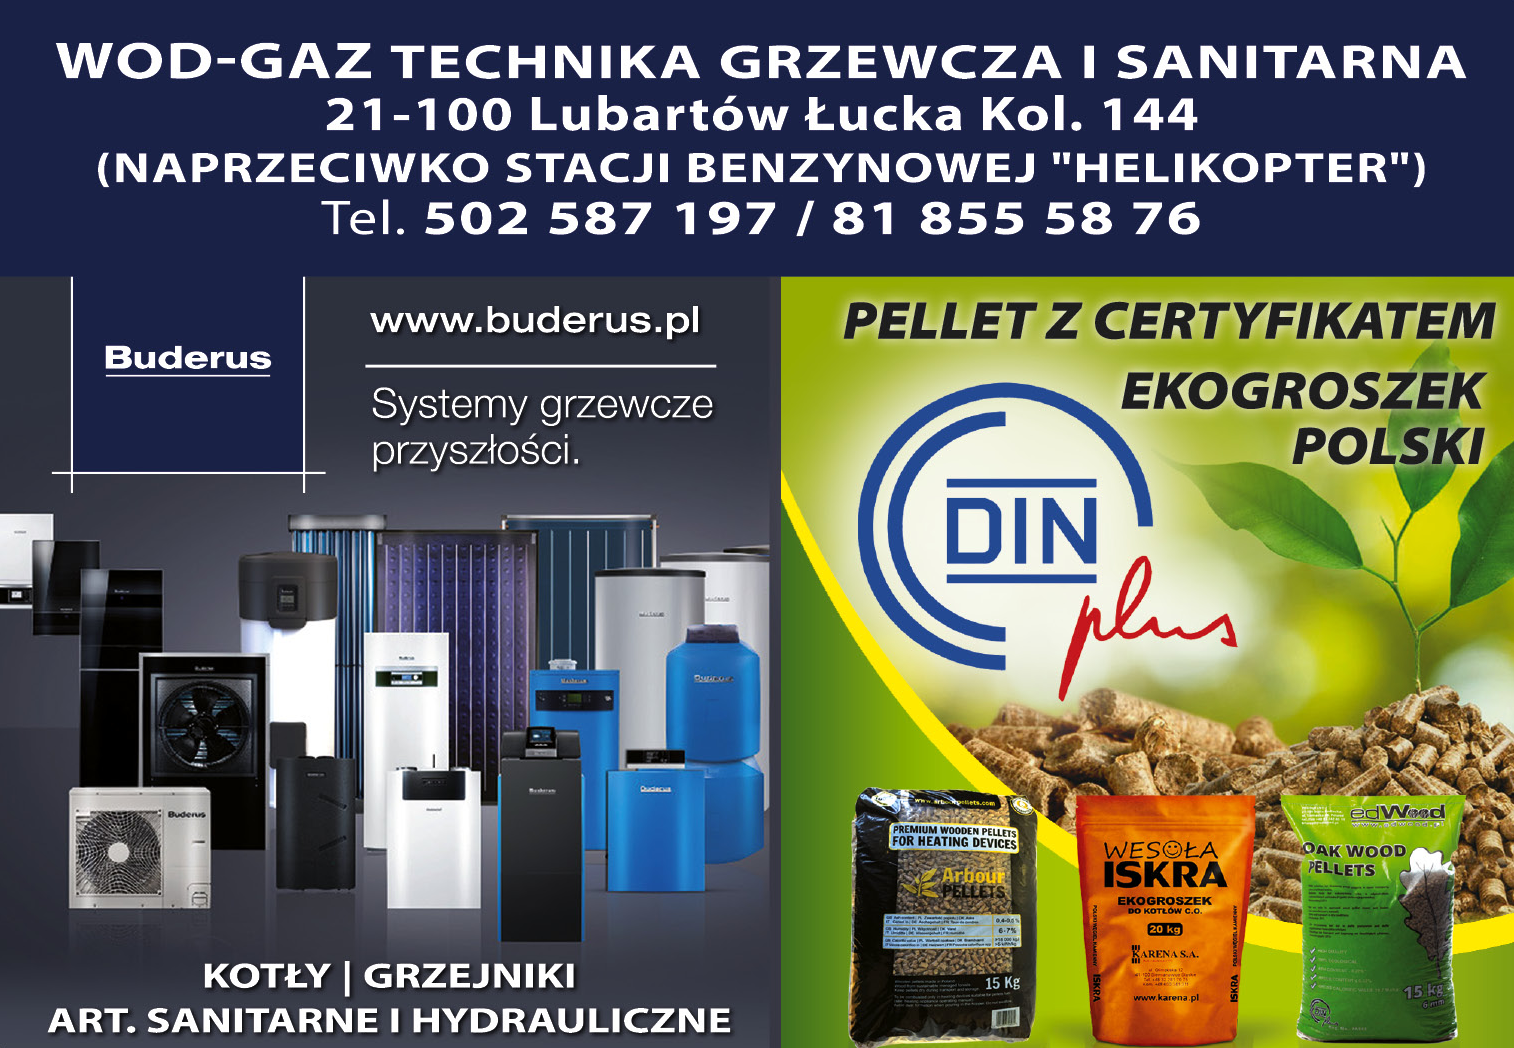 WOD-GAZ TECHNIKA GRZEWCZA I SANITARNA Łucka Kol. Kotły / Grzejniki / Art. Sanitarne / Pellet